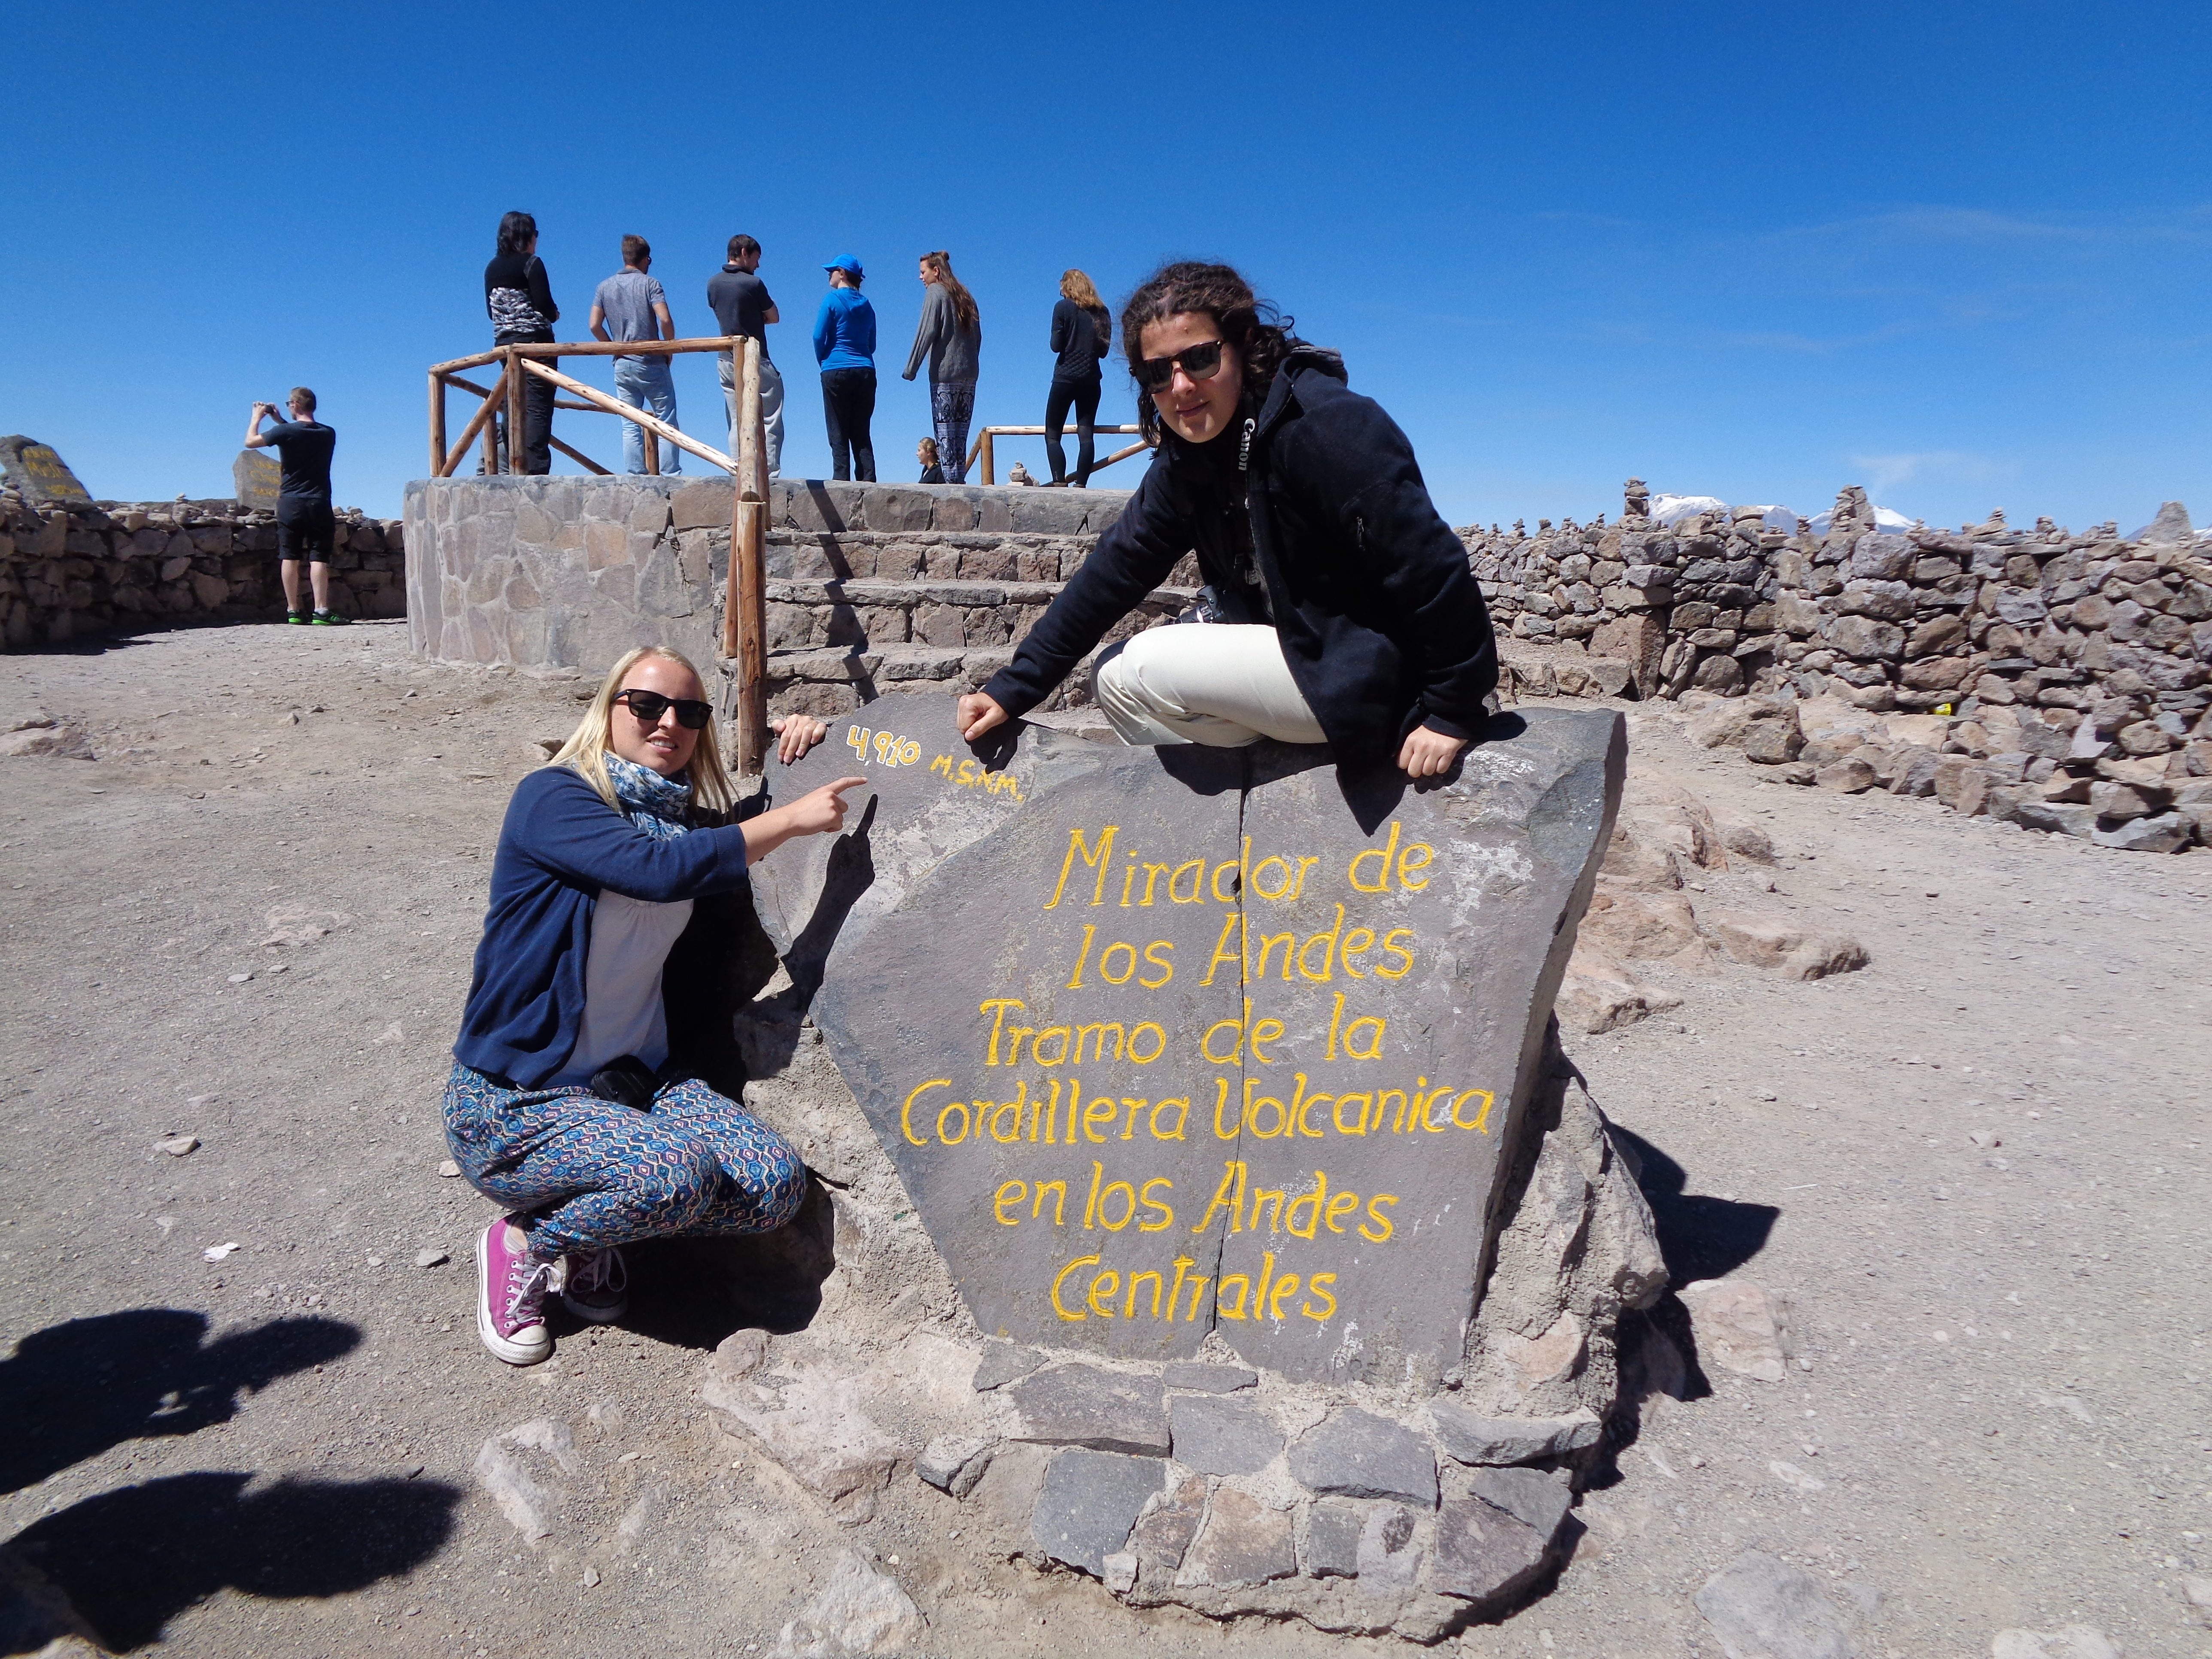 Der höchste Punkt unserer Perureise